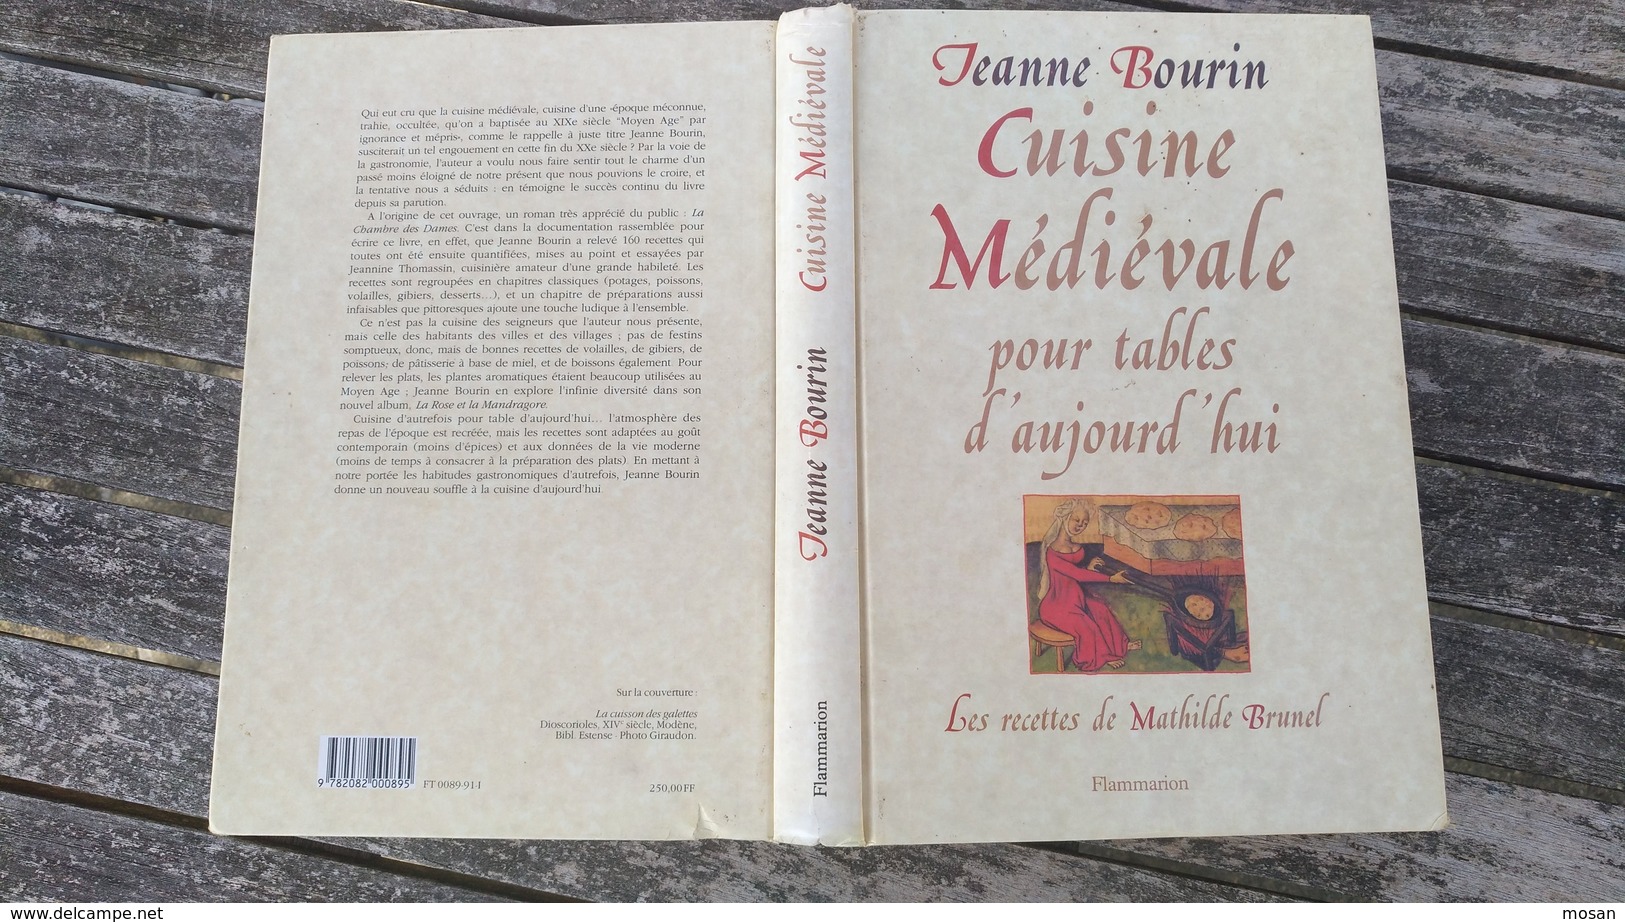 Cuisine Médiévale pour tables d'aujourd'hui. Jeanne Bourin. Recettes  de Mathilde Brunel. Moyen-Age - Cuisine